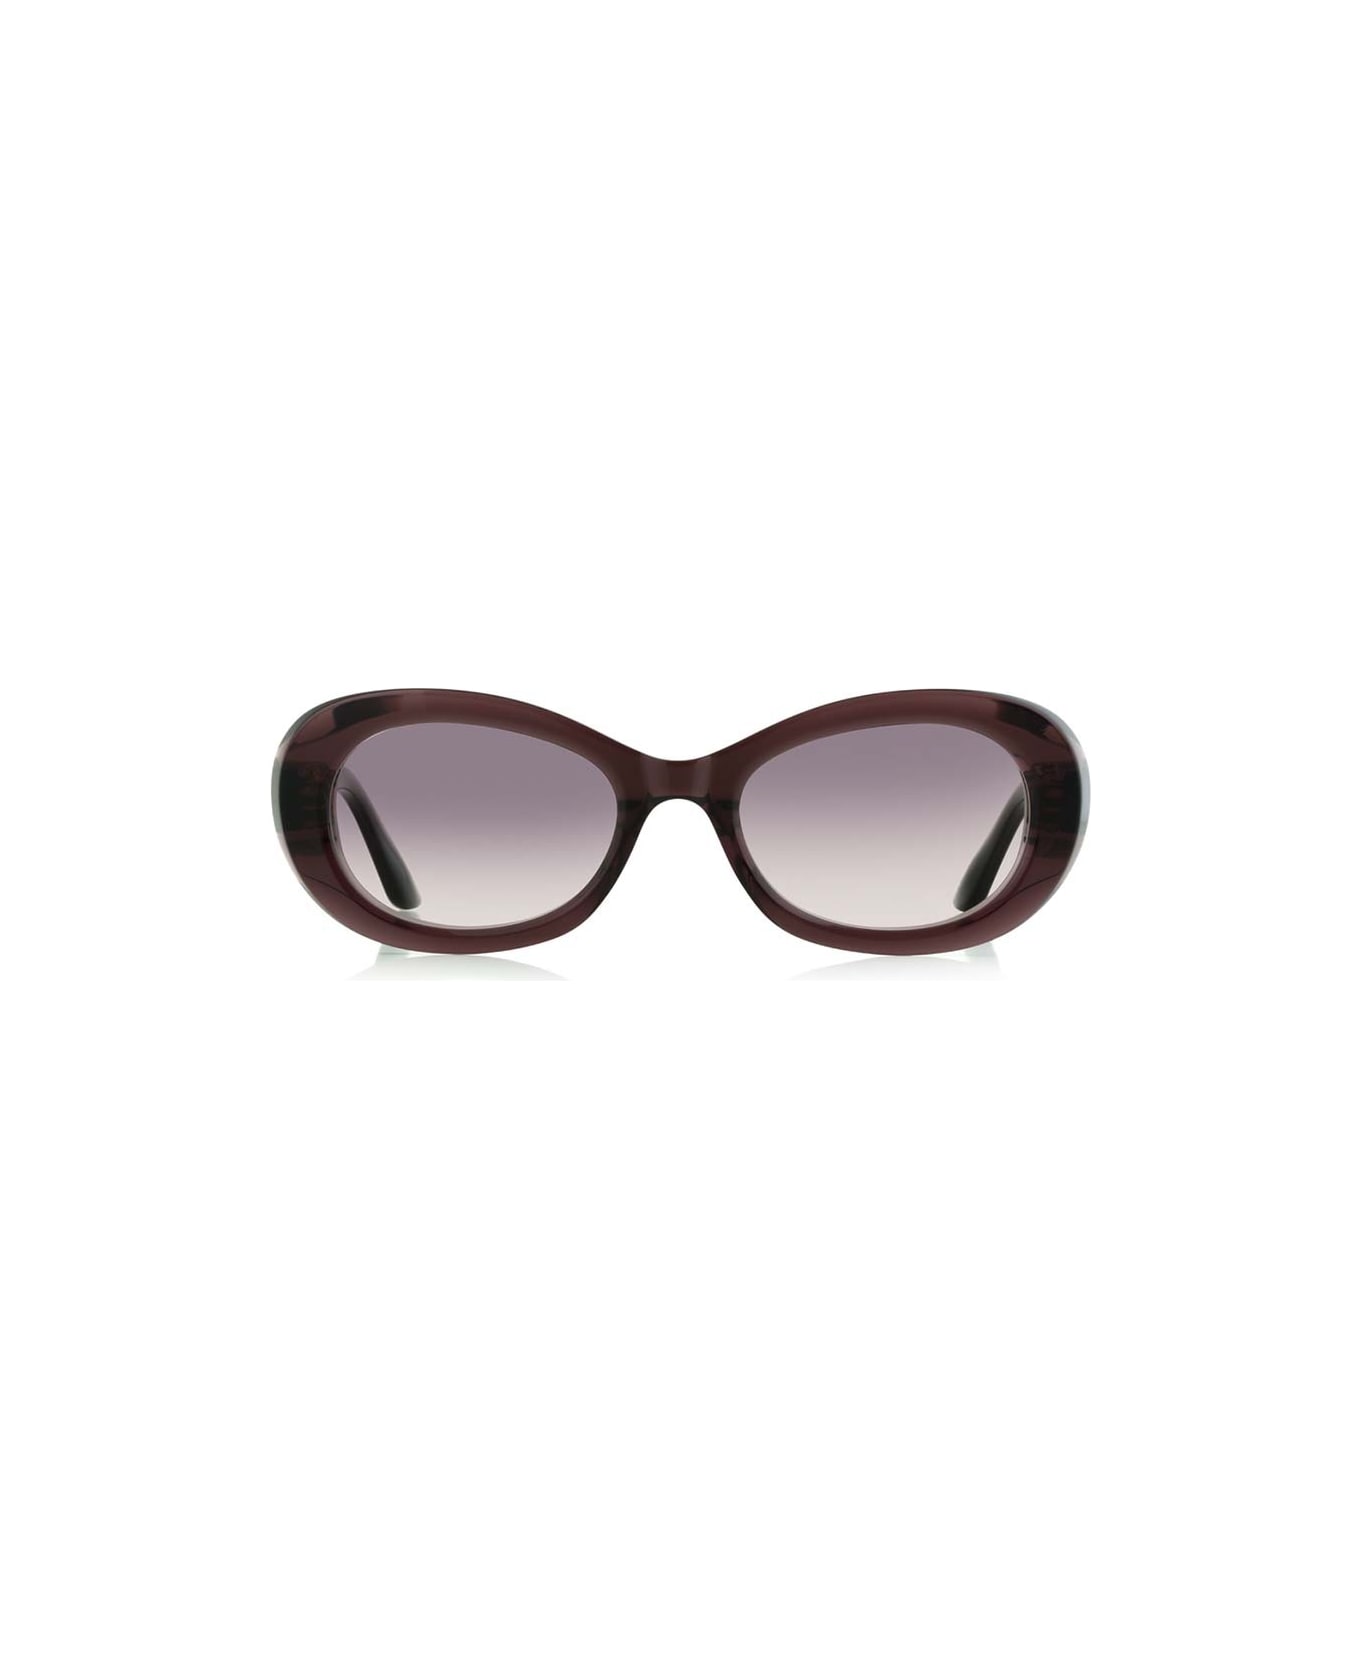 Robert La Roche Sunglasses - Bordeaux/Rosso